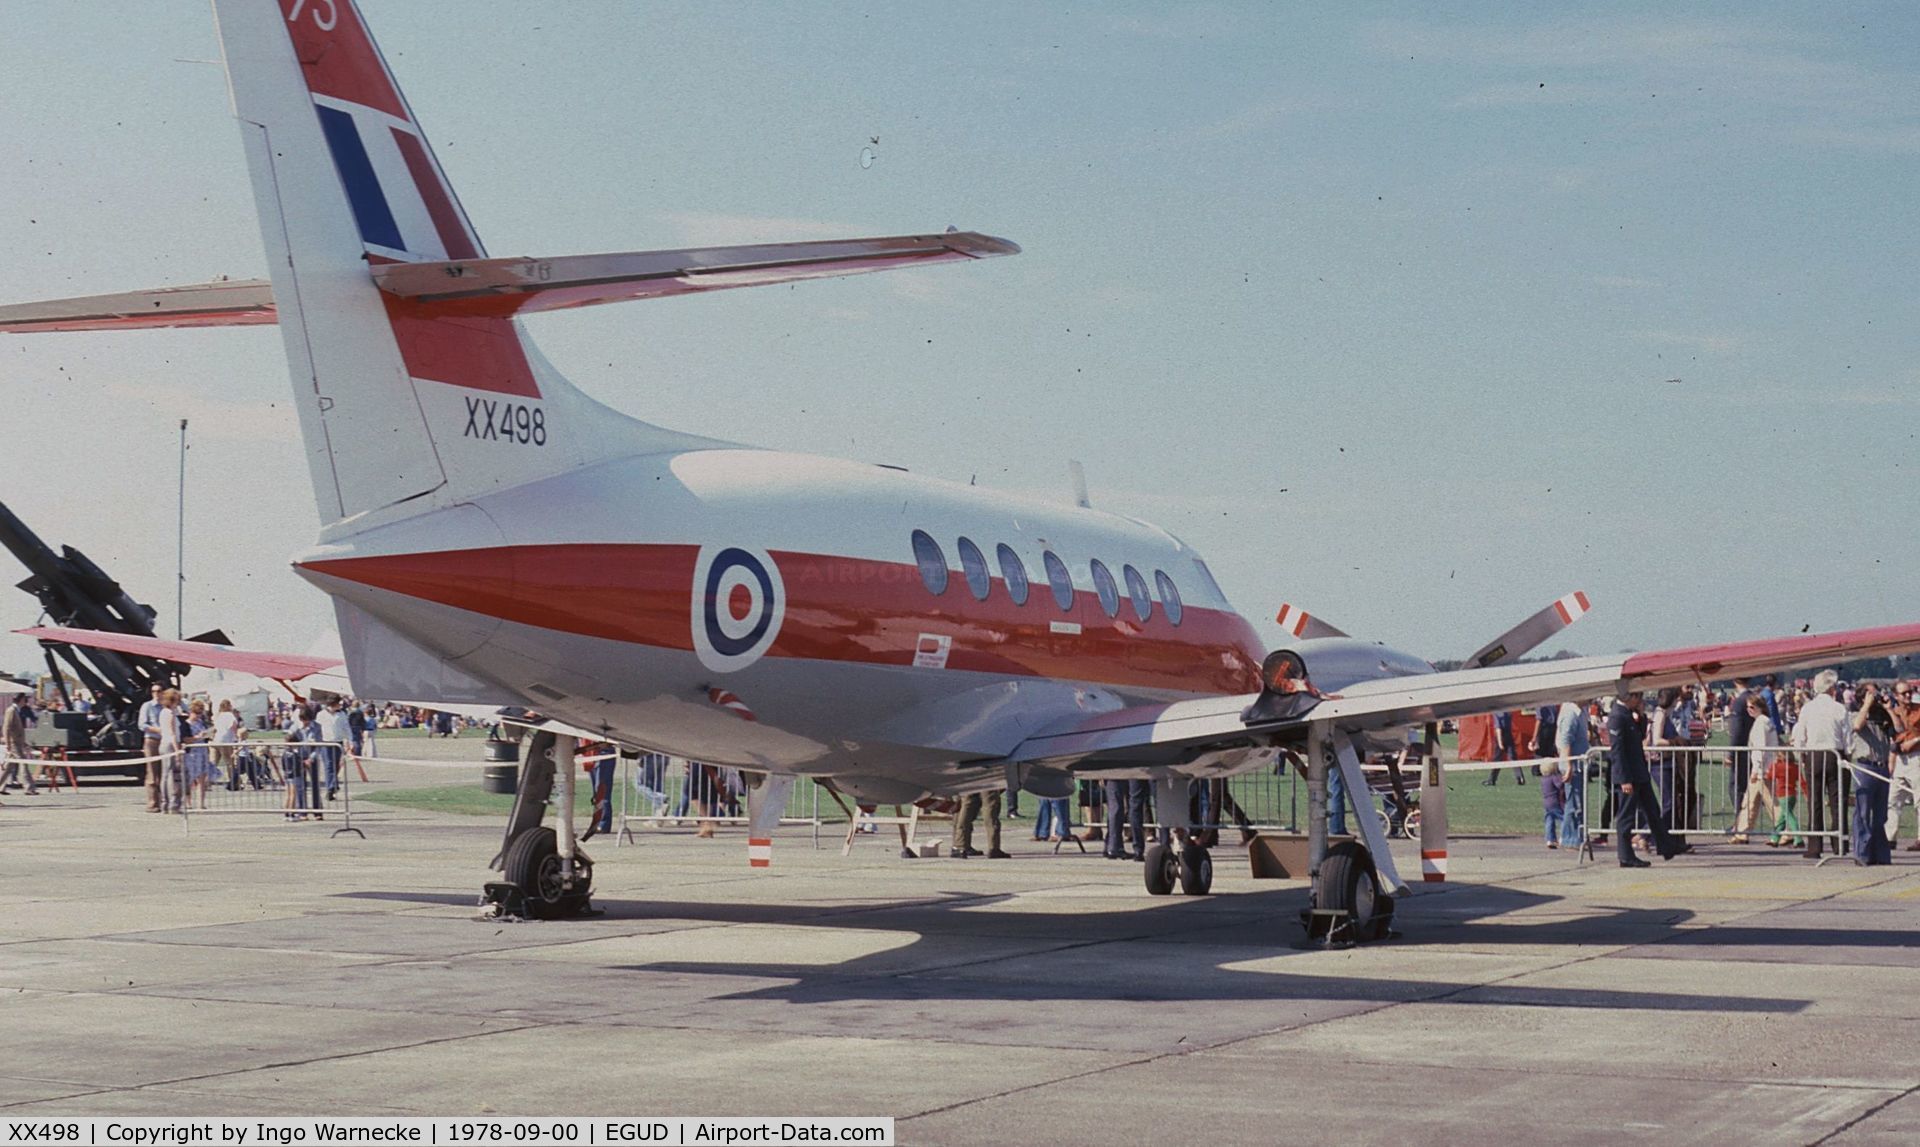 XX498, 1976 Scottish Aviation HP-137 Jetstream T.1 C/N 424, Handley Page (Scottish Aviation) HP.137 Jetstream T1 at 1978 RAF Abingdon air show